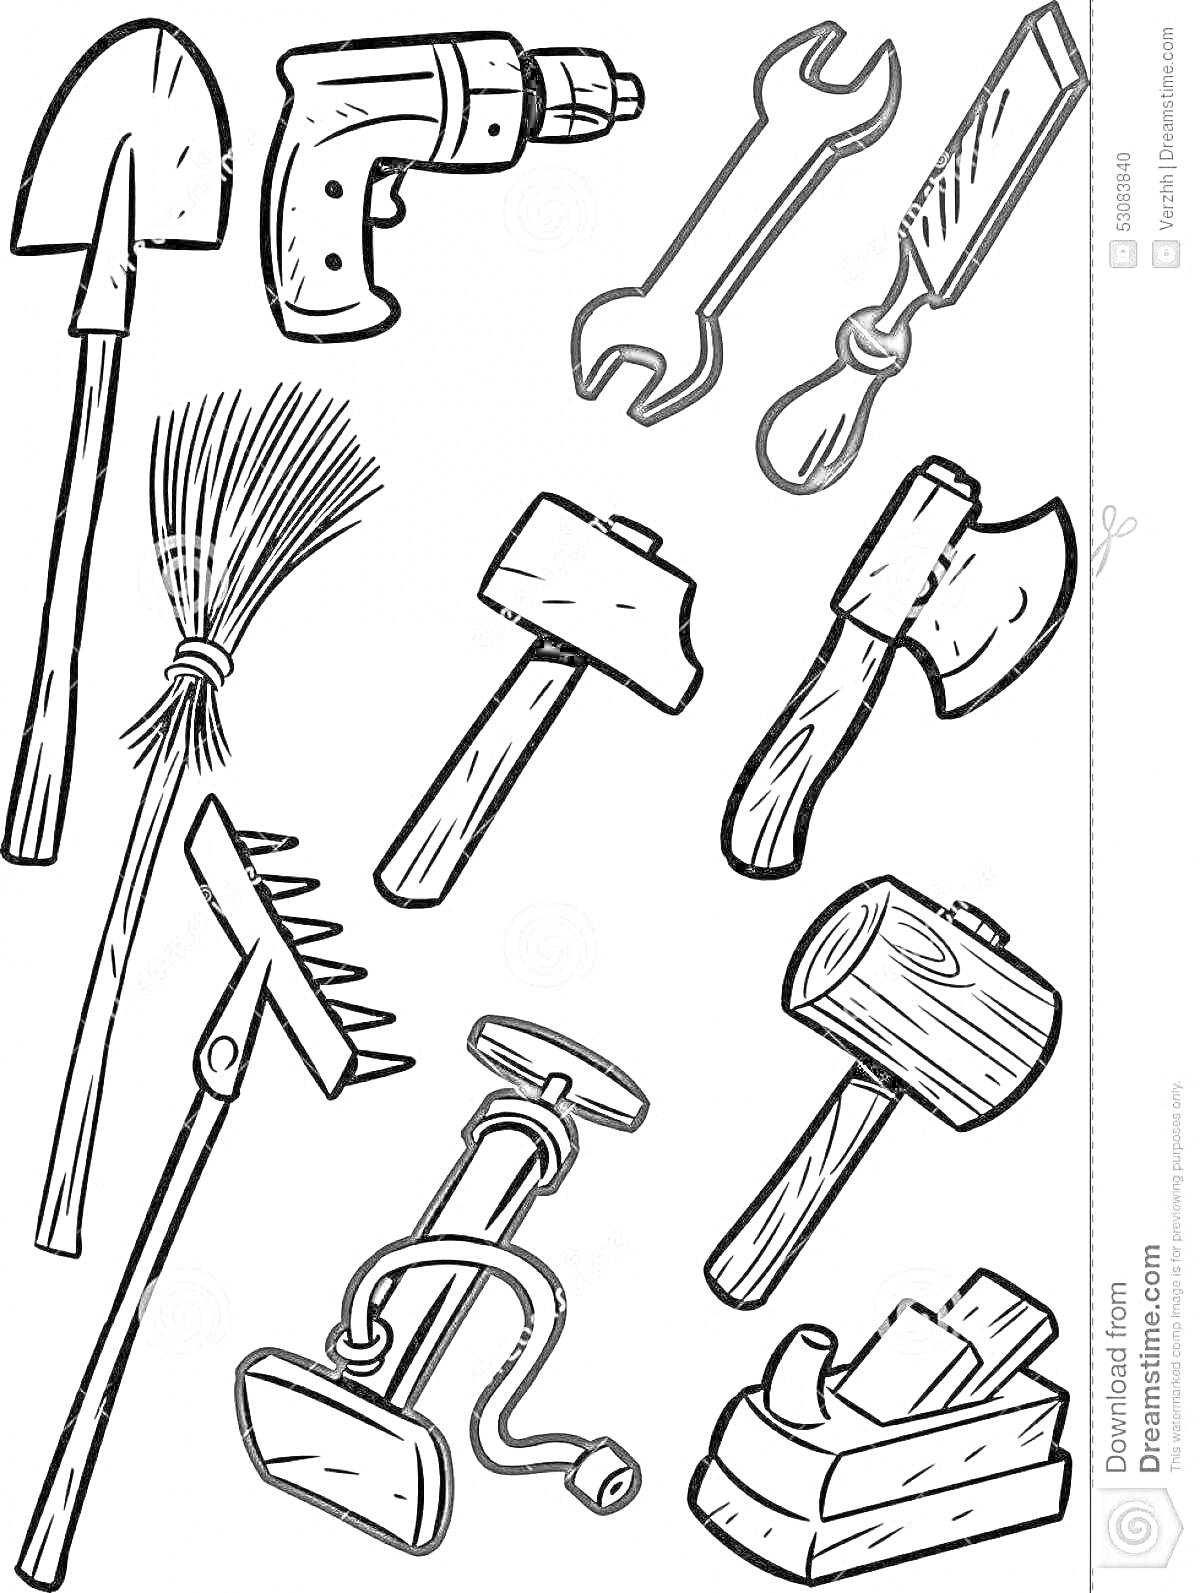 Раскраска Лопата, дрель, гаечный ключ, стамеска, метла, молоток, топор, грабли, ножной насос, деревянный молоток, рубанок